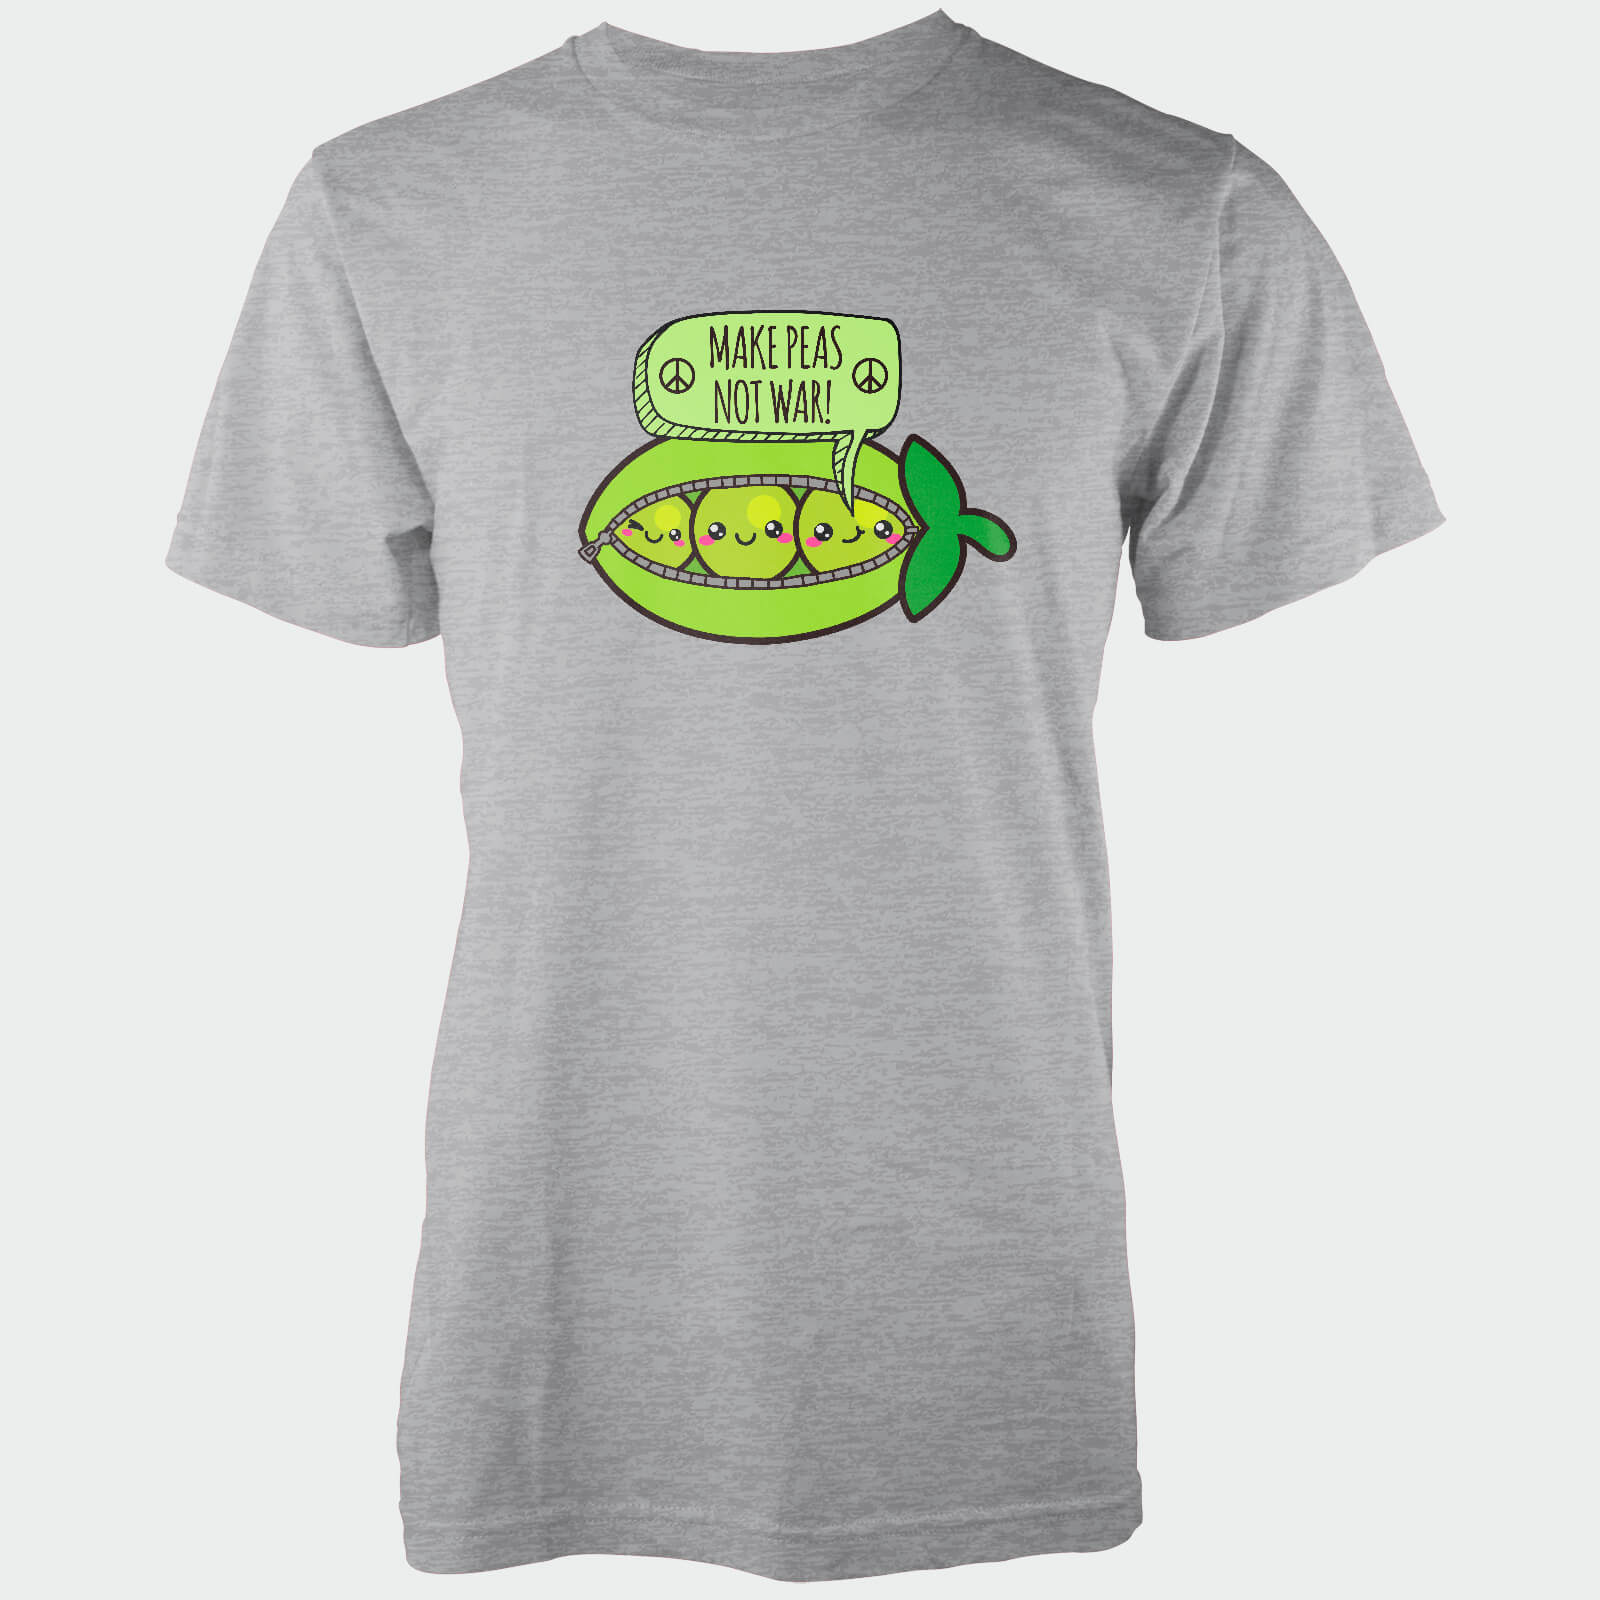 Make Peas Not War Grey T-Shirt - S - Gris